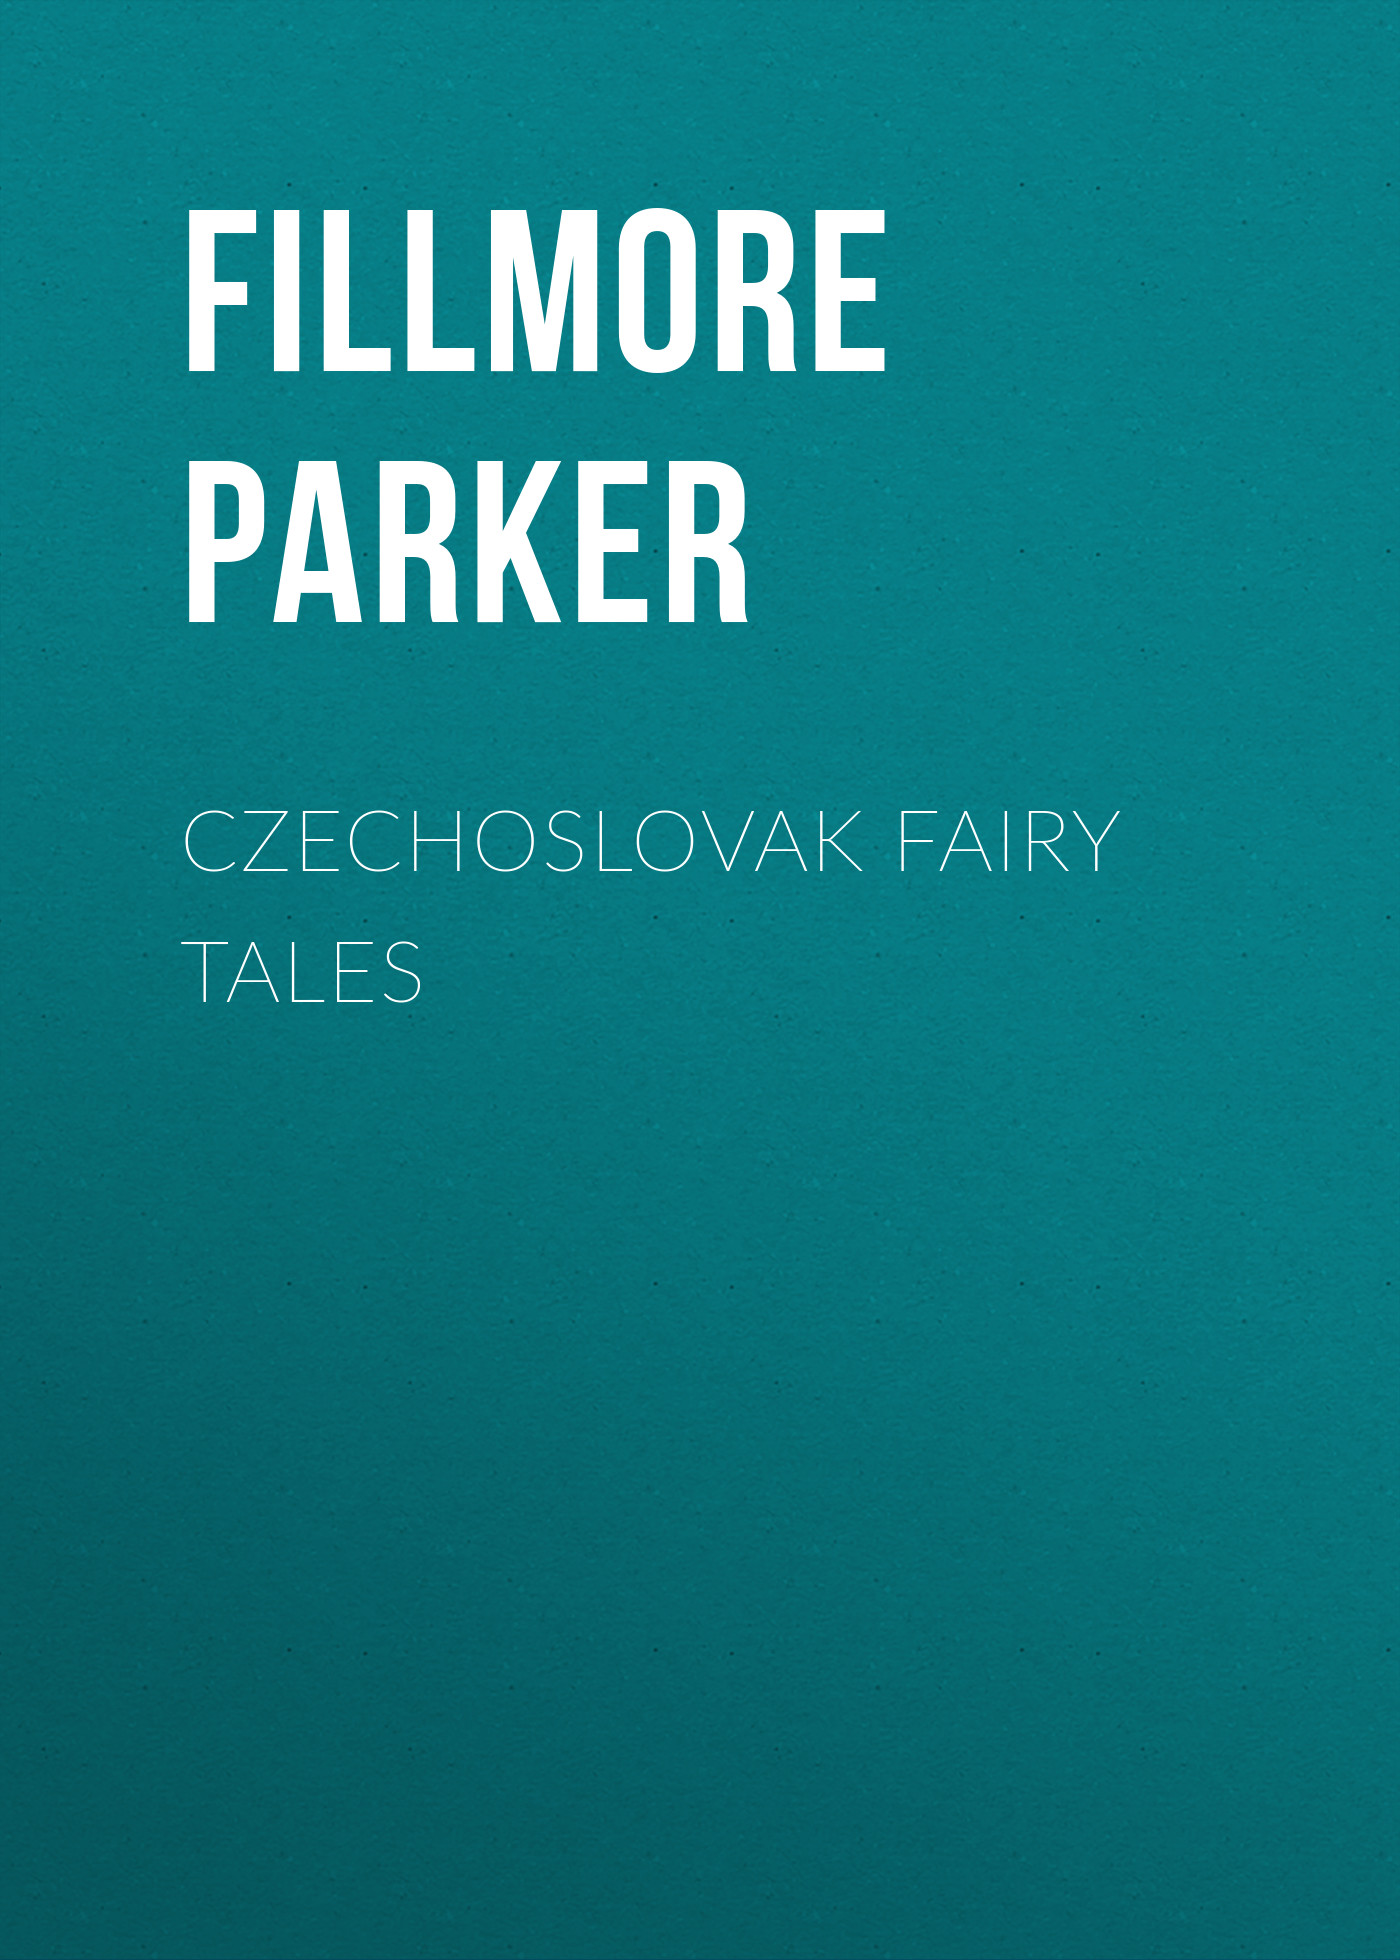 Книга Czechoslovak Fairy Tales из серии , созданная Parker Fillmore, может относится к жанру Зарубежная старинная литература, Зарубежная классика, Сказки. Стоимость электронной книги Czechoslovak Fairy Tales с идентификатором 24727633 составляет 0 руб.